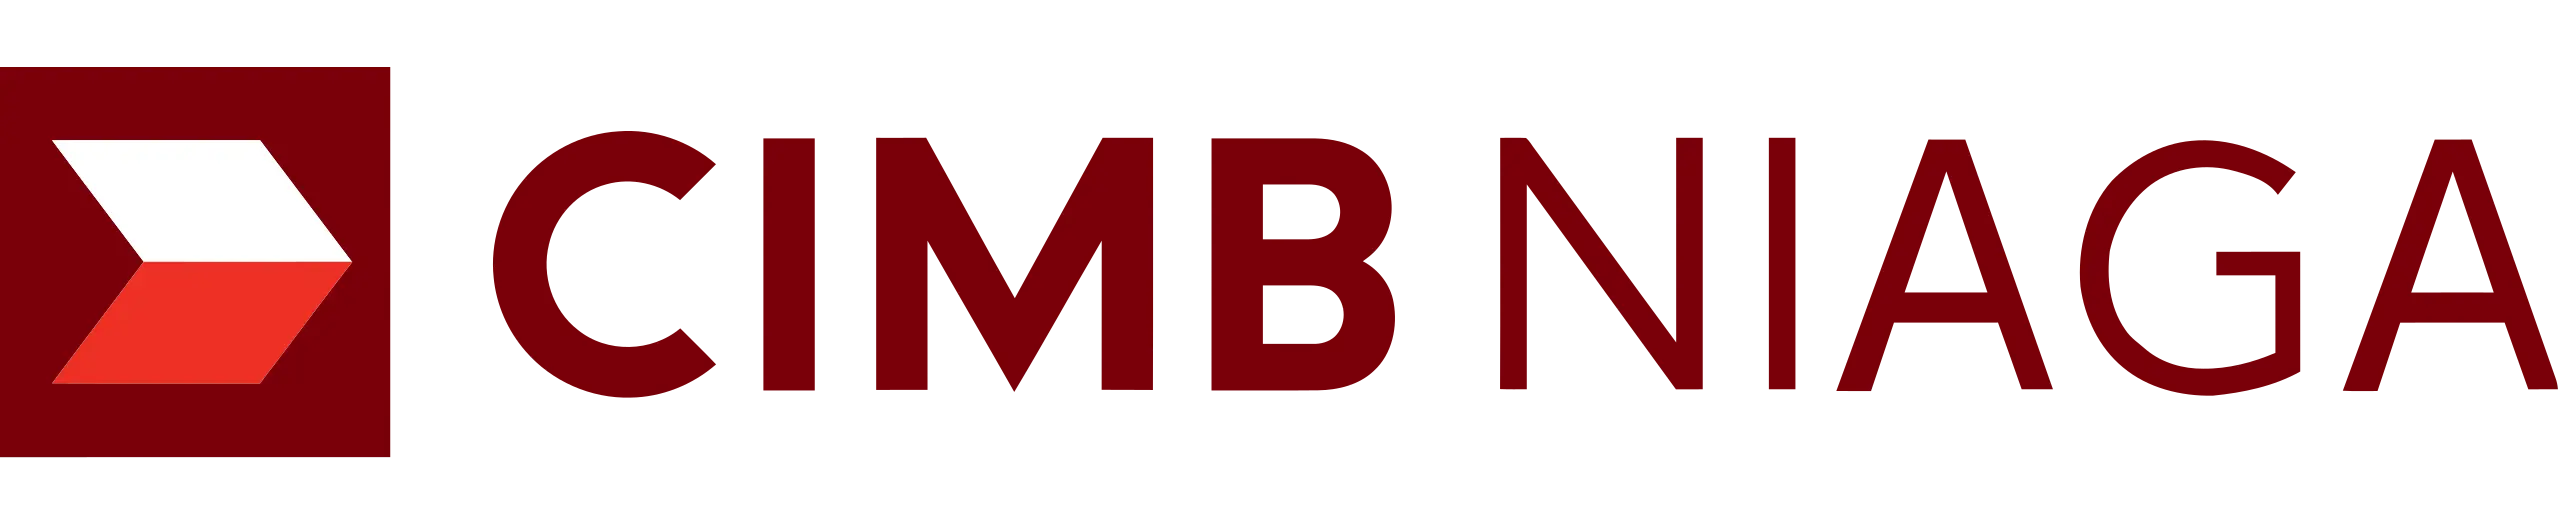 CIMB Niaga Payment Logo